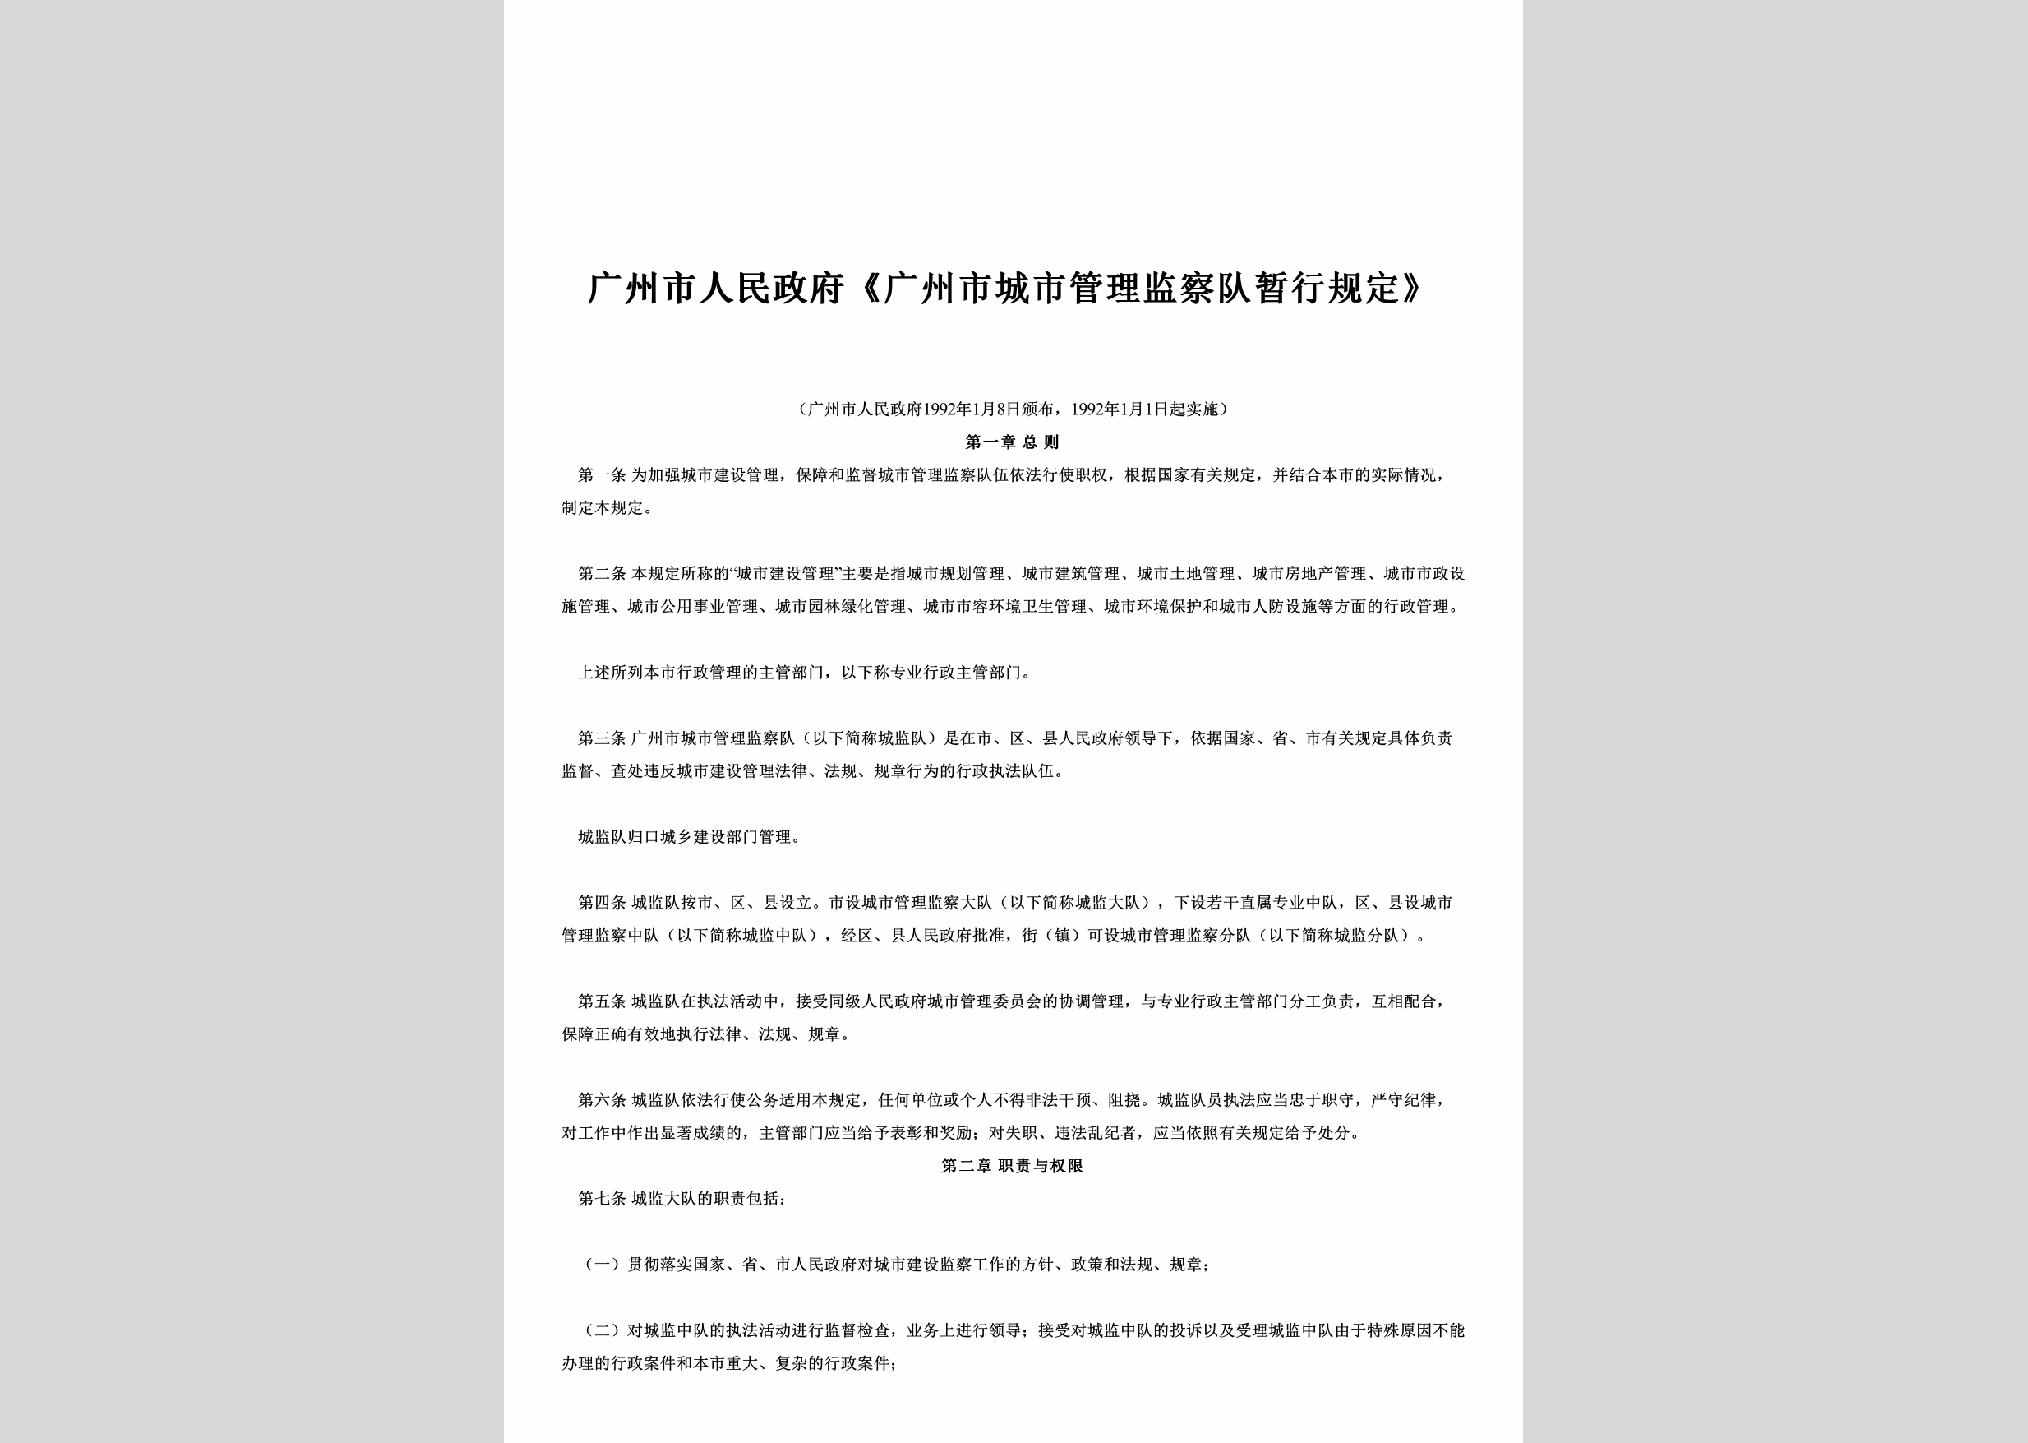 GD-CSGLJCGD-1992：《广州市城市管理监察队暂行规定》